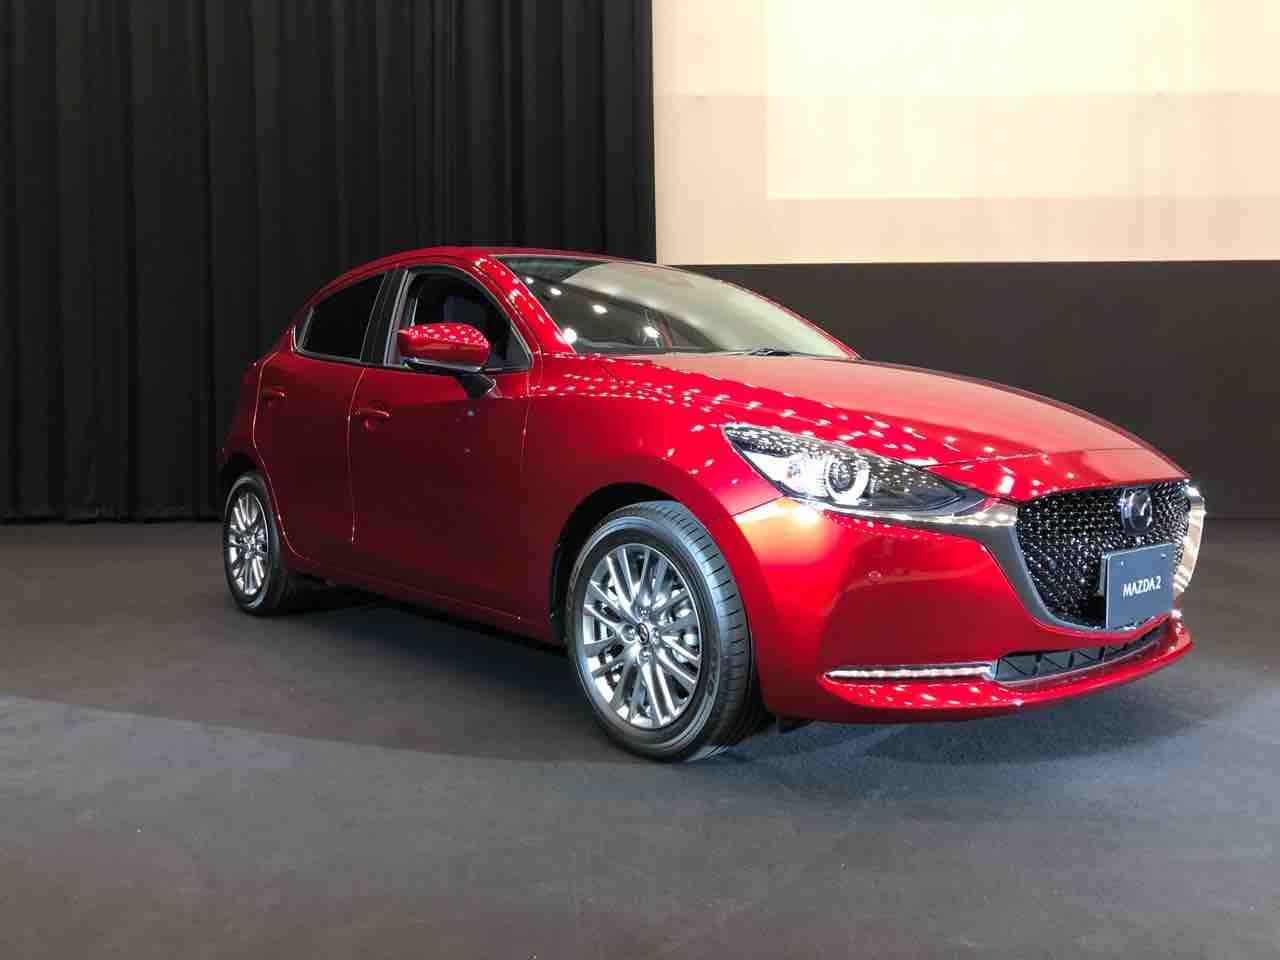 Mazda2 クリーンディーゼルのwltcモード燃費は25 2km L クルマのミライ Future Of Mobility